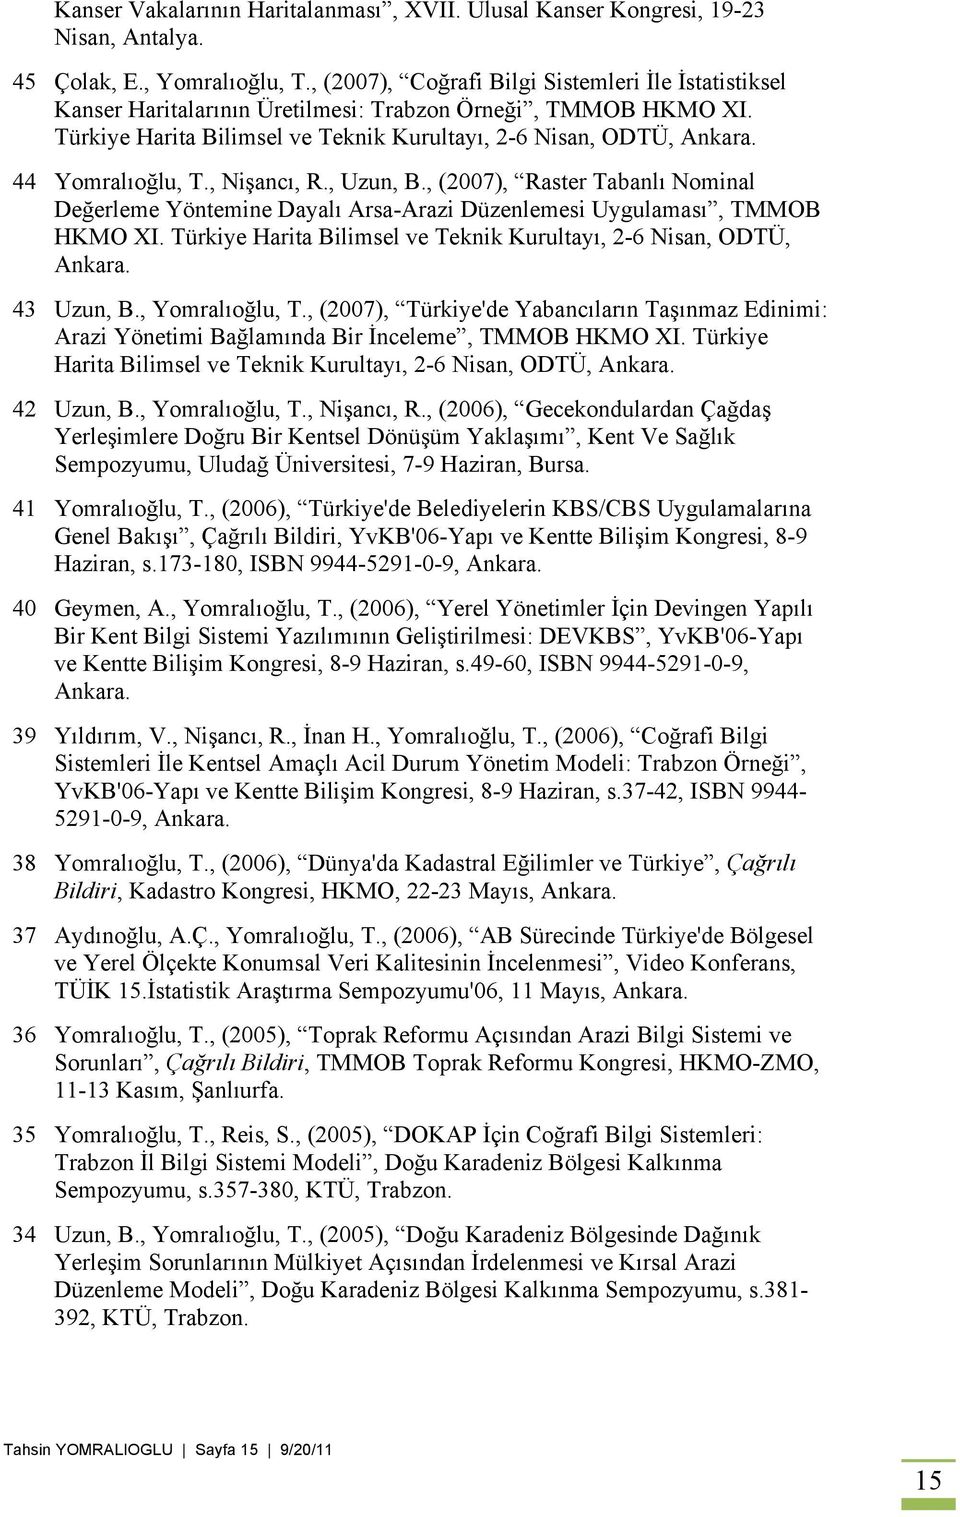 44 Yomralıoğlu, T., Nişancı, R., Uzun, B., (2007), Raster Tabanlı Nominal Değerleme Yöntemine Dayalı Arsa-Arazi Düzenlemesi Uygulaması, TMMOB HKMO XI.